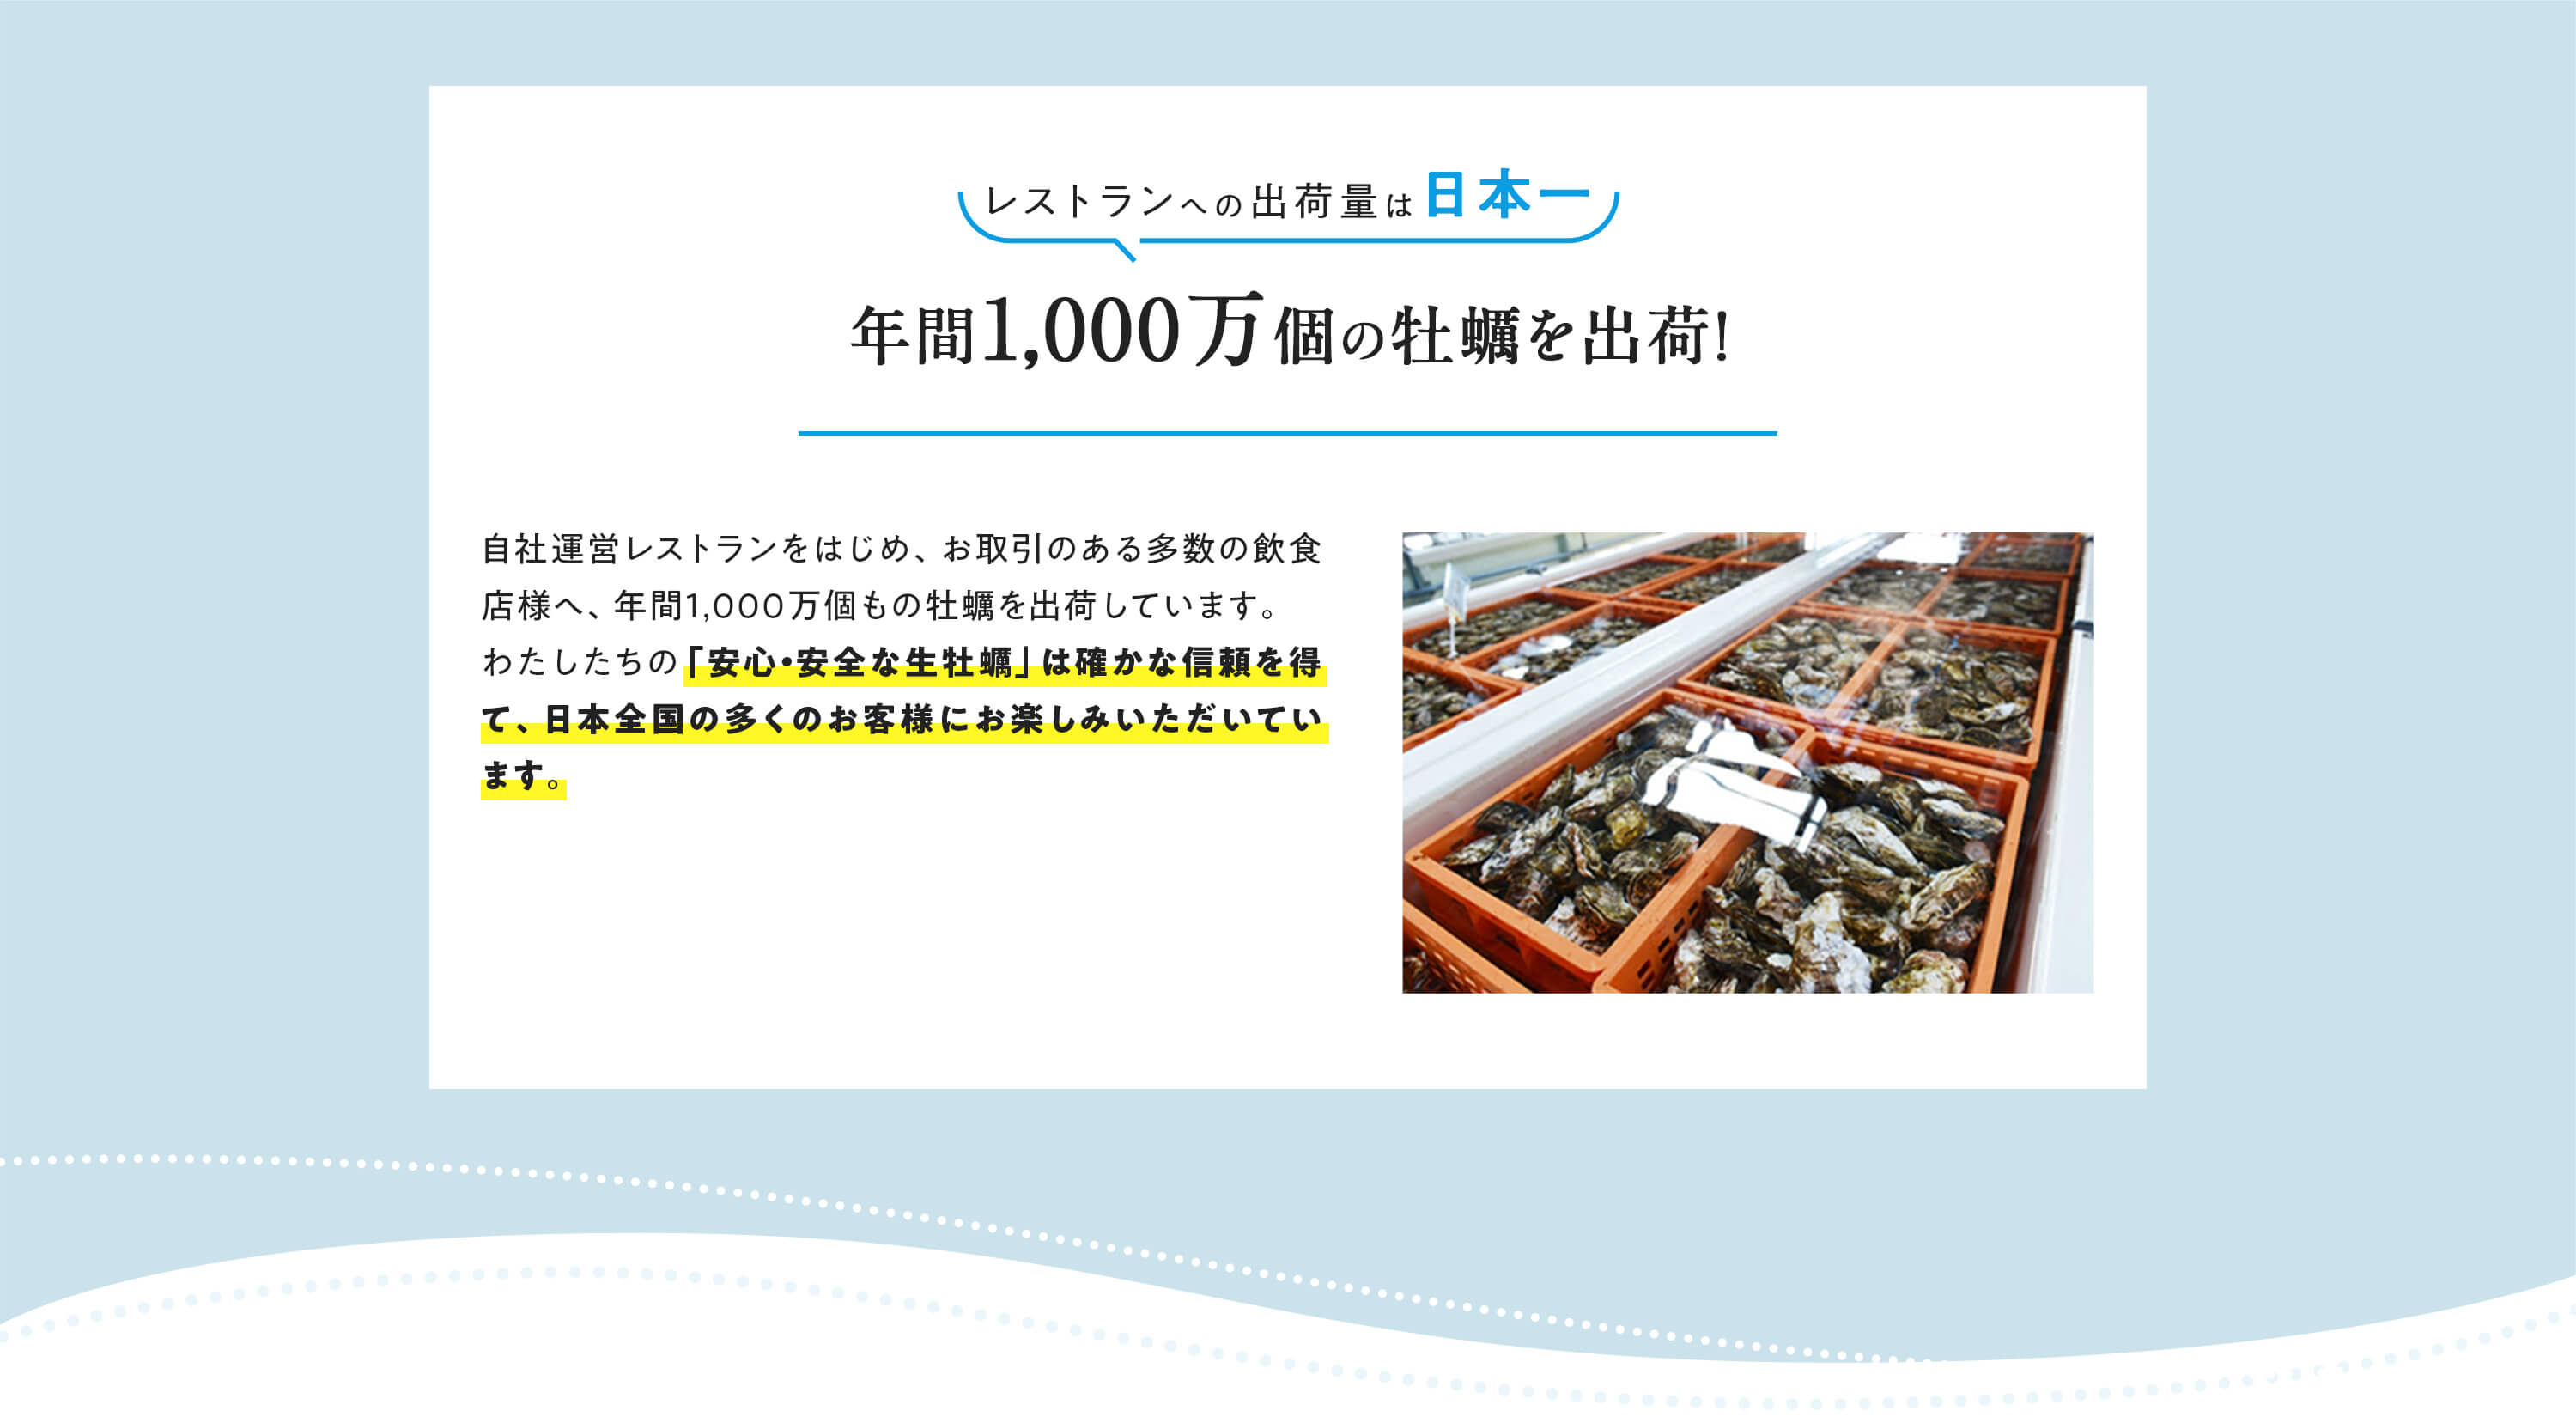 レストランへの出荷量は日本一 年間1,000万個の牡蠣を出荷